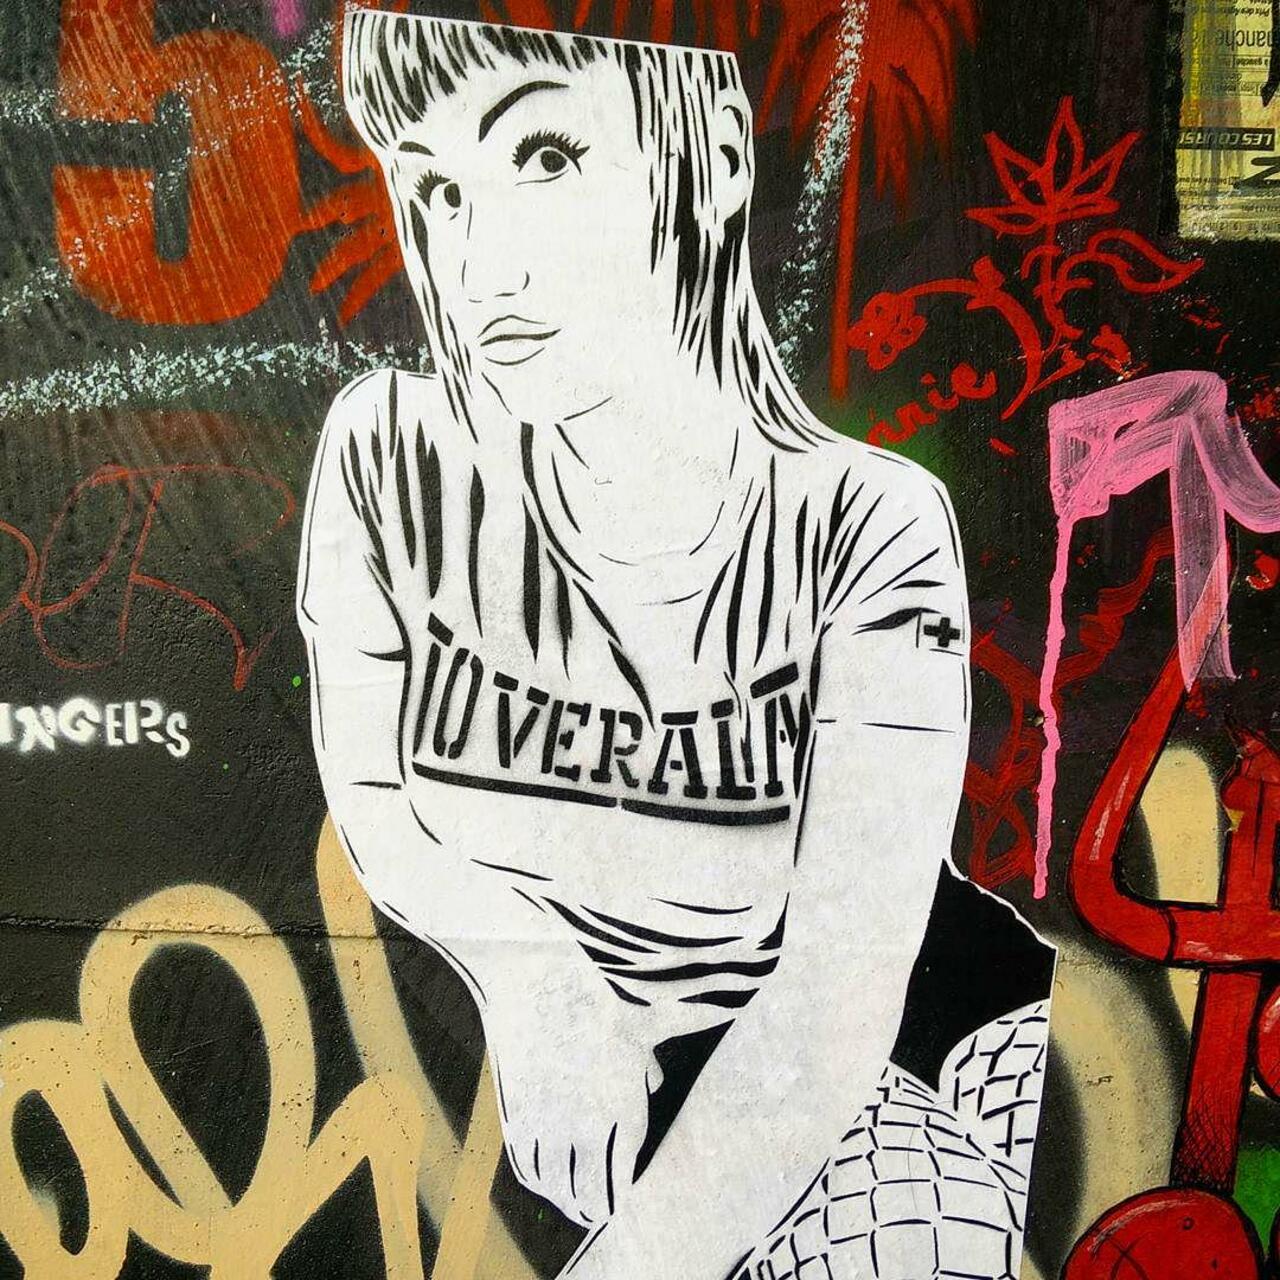 circumjacent_fr: #Paris #graffiti photo by ceky_art http://ift.tt/1VVc9pr #StreetArt http://t.co/iM4PCMmPia